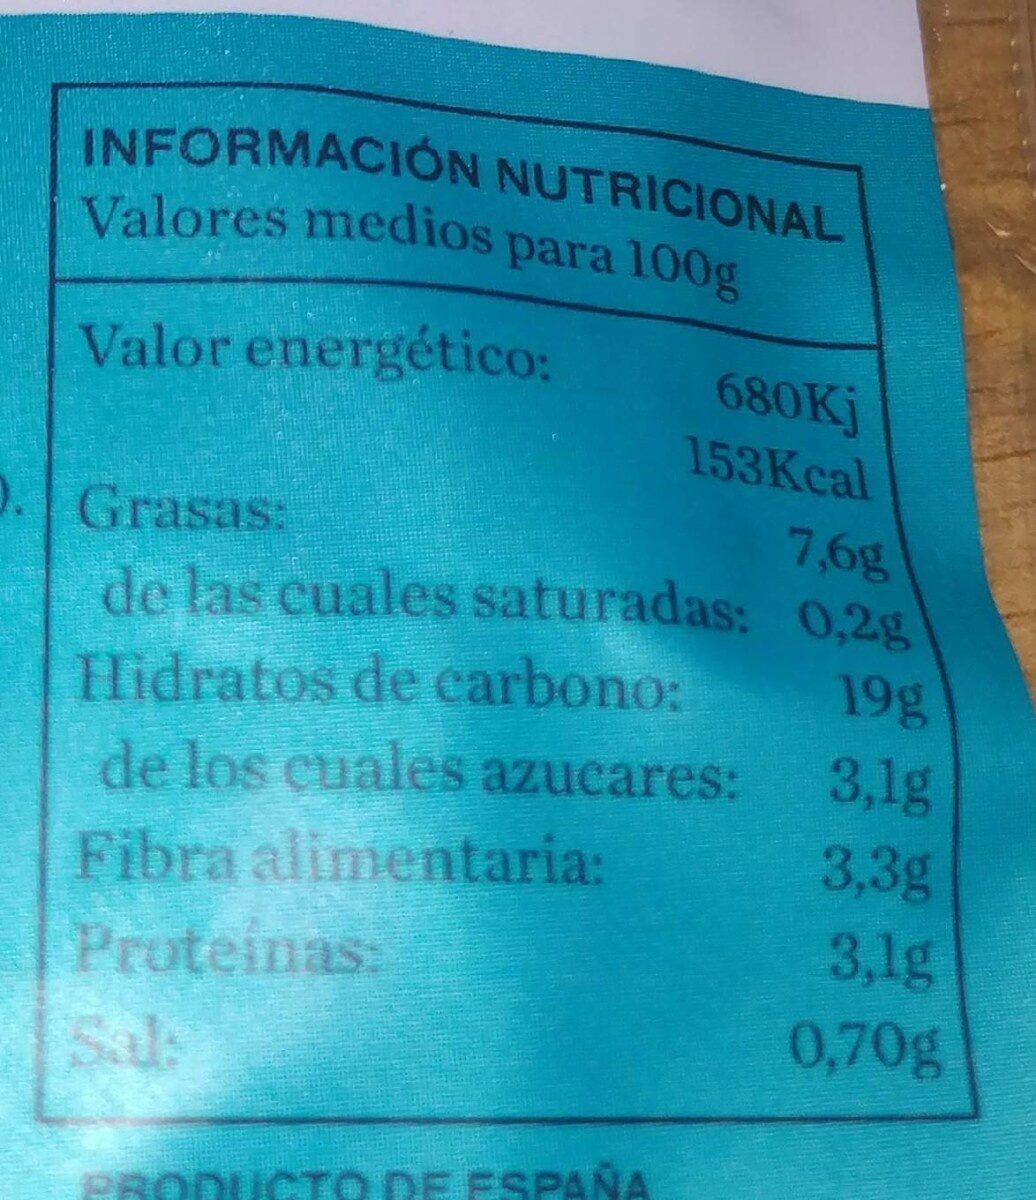 Hamburguesas de quinoa con calabaza - Nutrition facts - es